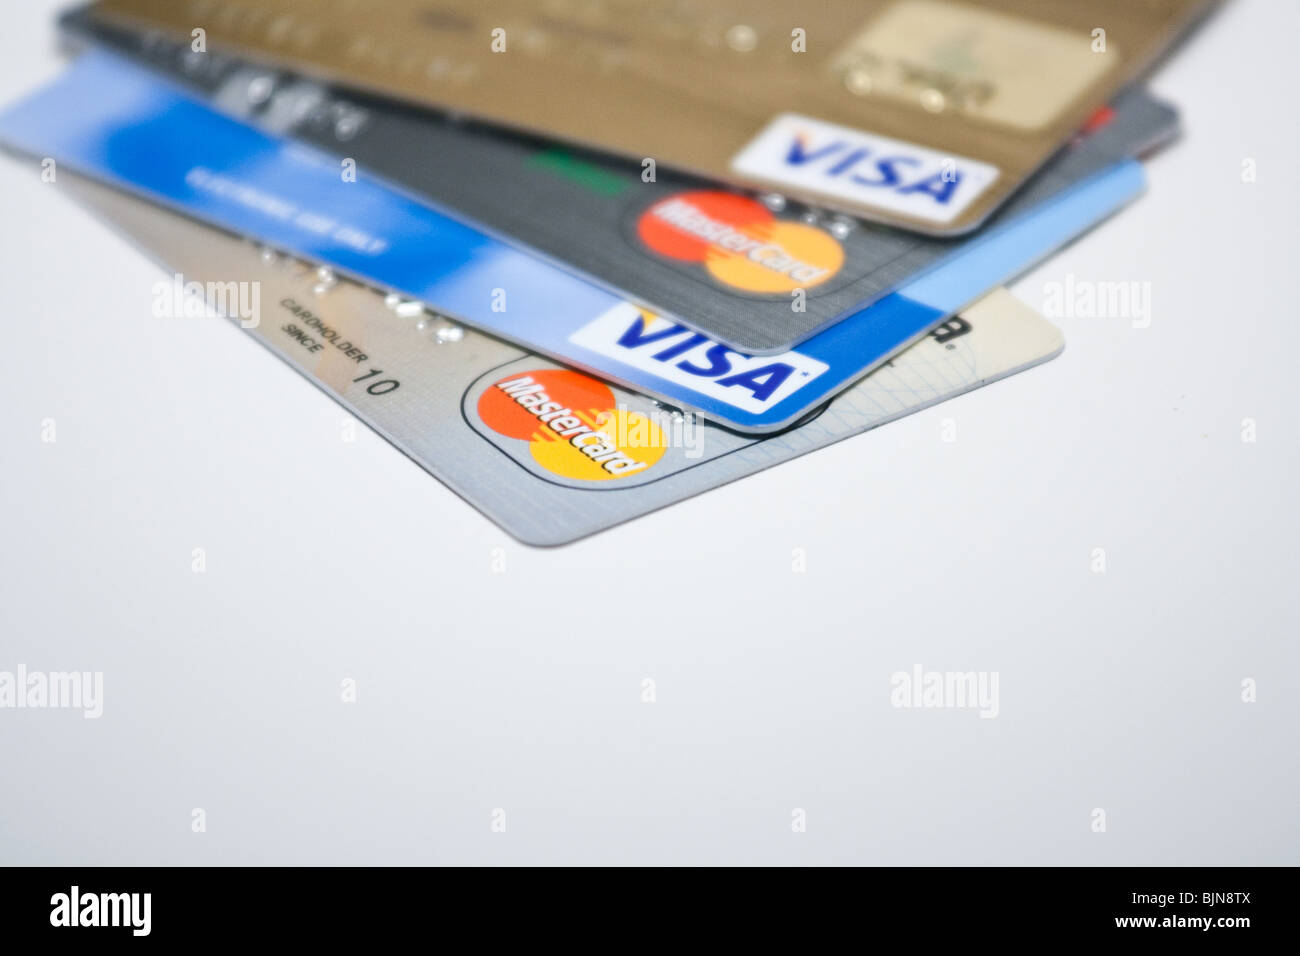 La dette des cartes de crédit Visa Mastercard paiement crédits bancaires prêt finances pile plastique carte gros plan Banque D'Images